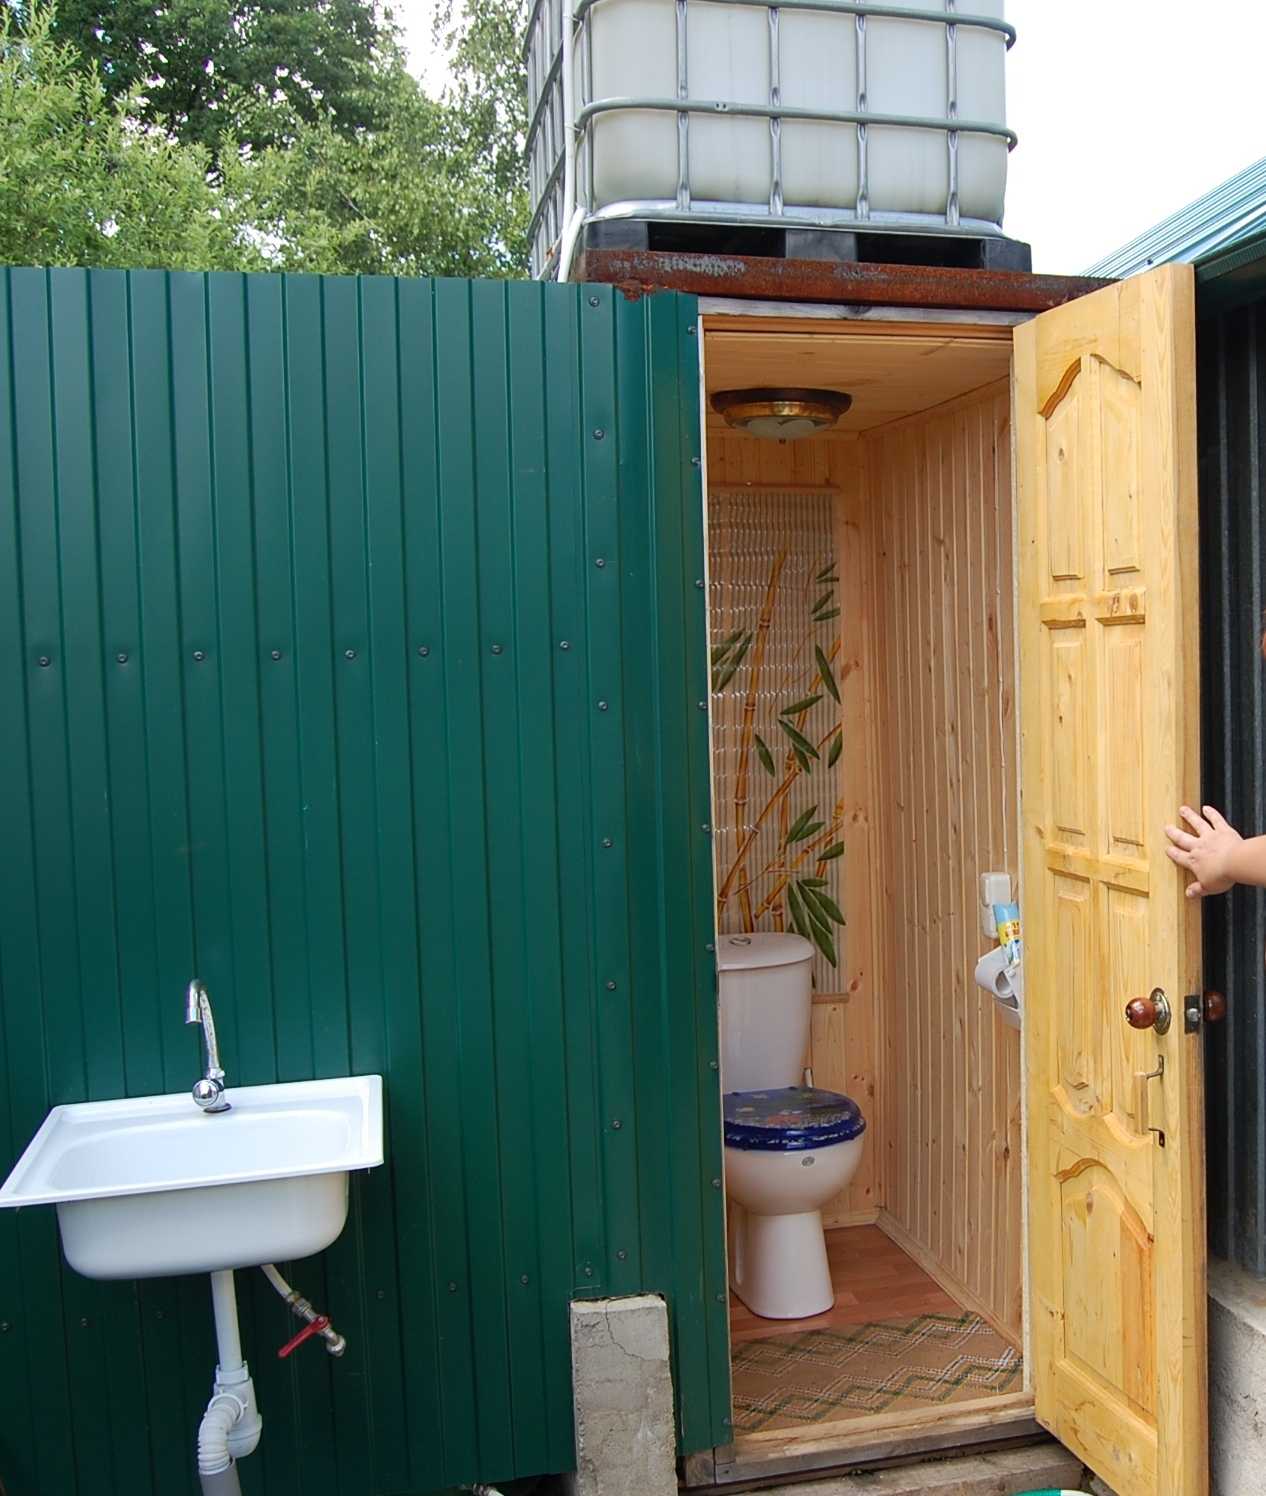 Дачный туалет: устройство уличного садового туалета для дачи, какой лучше выбрать, виды дачных туалетов, какой летний туалет сделать на даче, варианты